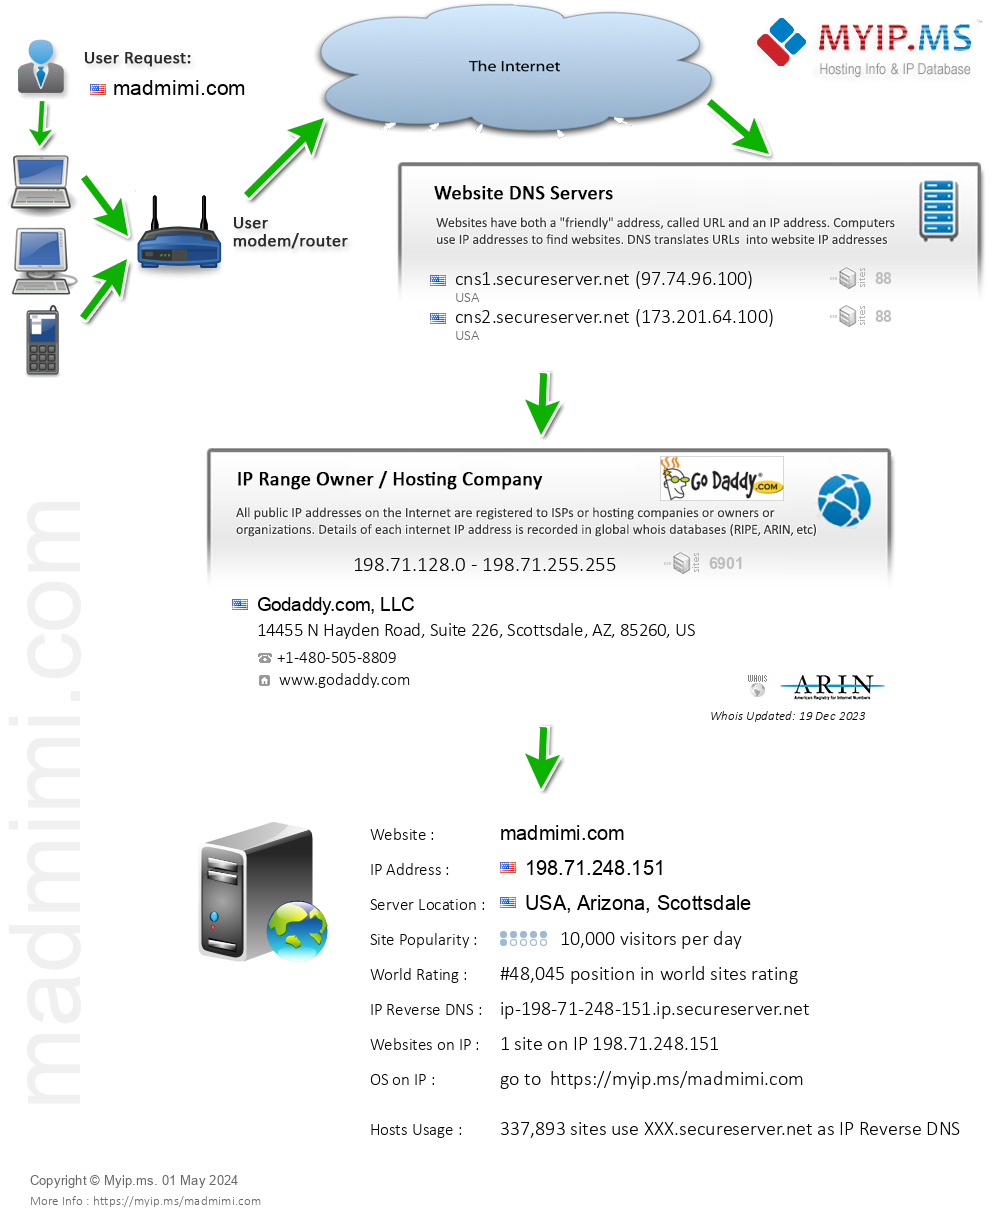 Madmimi.com - Website Hosting Visual IP Diagram